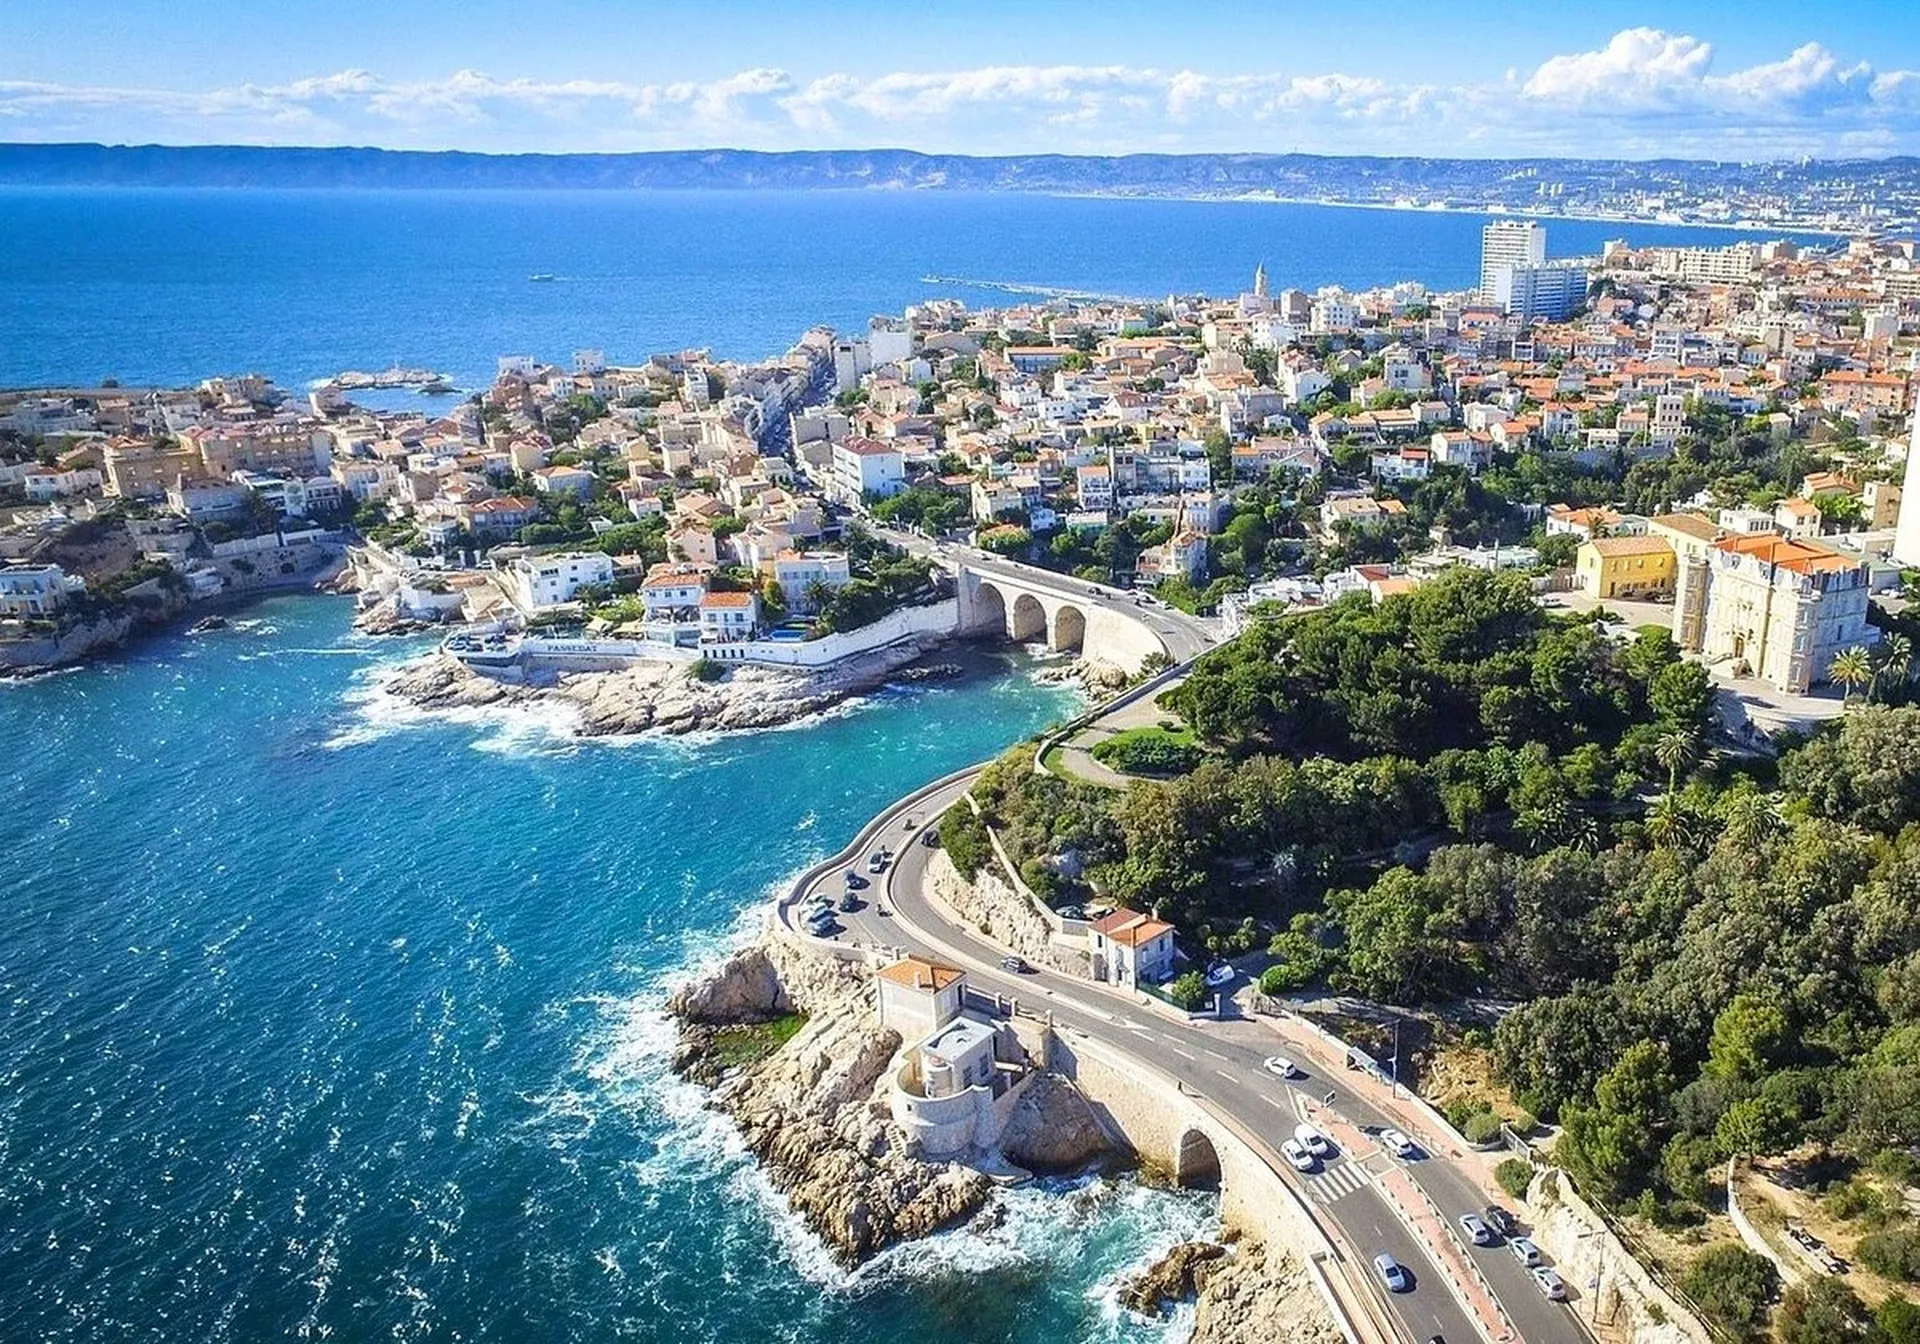 Explore Marseille